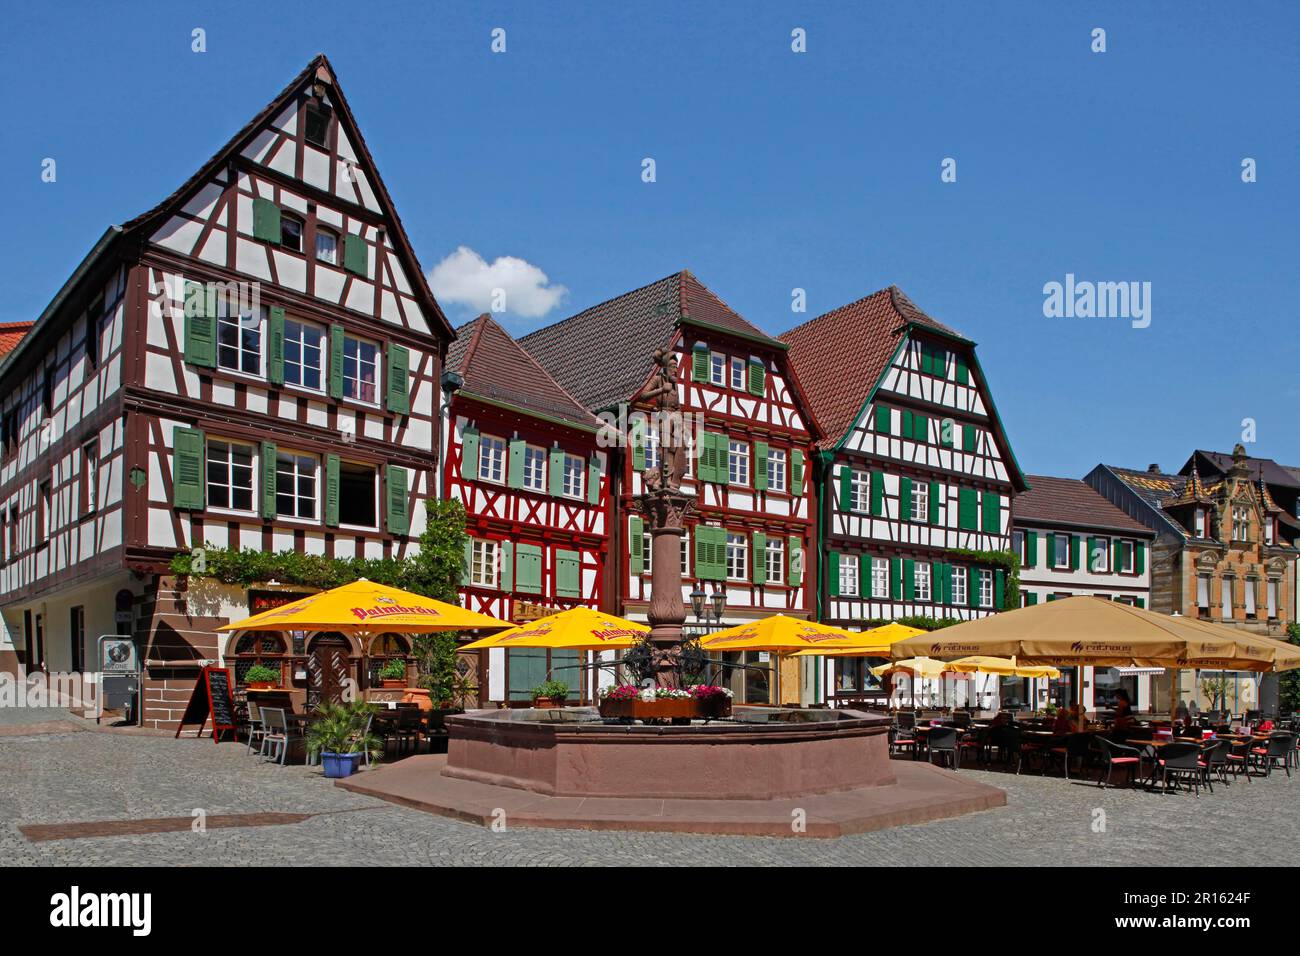 Market place, market fountain, Bretten, Kraichgau, Karlsruhe county, Baden-Wuerttemberg, Germany Stock Photo